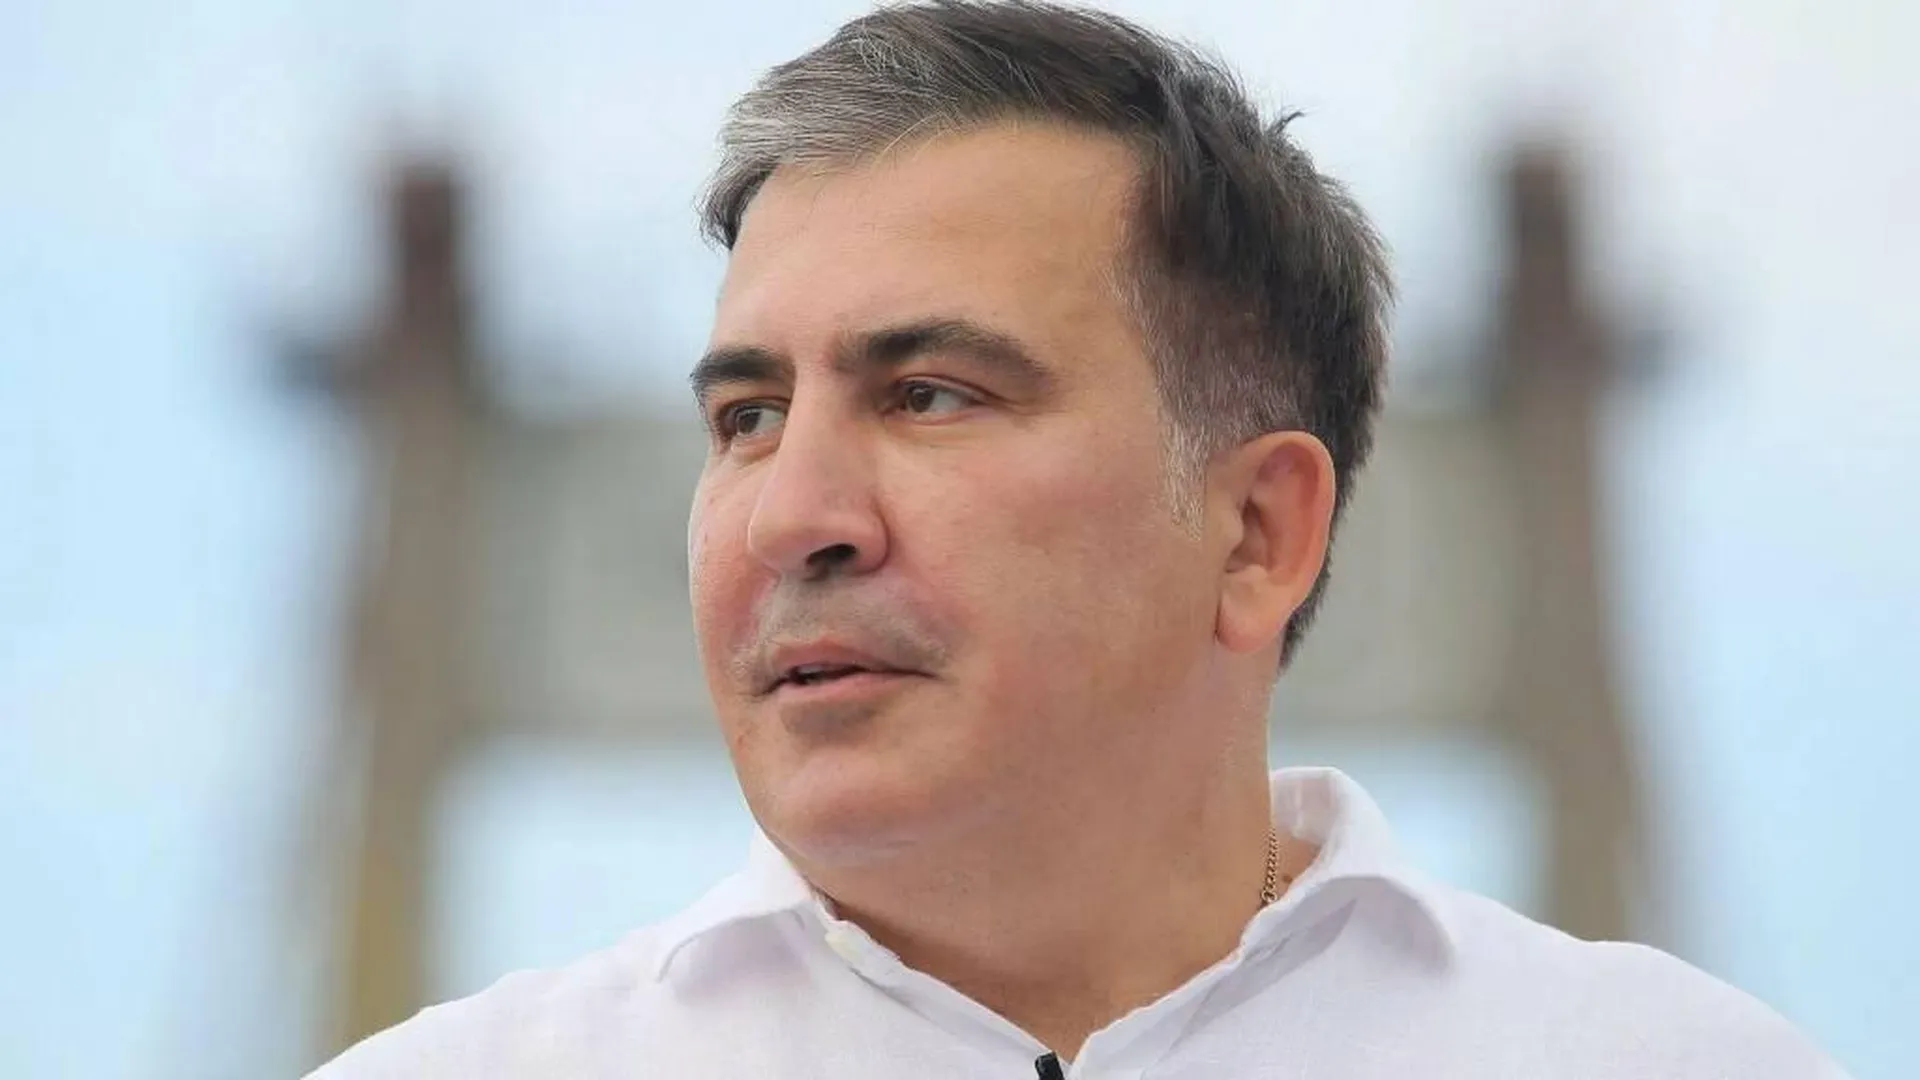 Иск Саакашвили о переводе в зарубежную клинику на лечение отклонили в ЕСПЧ